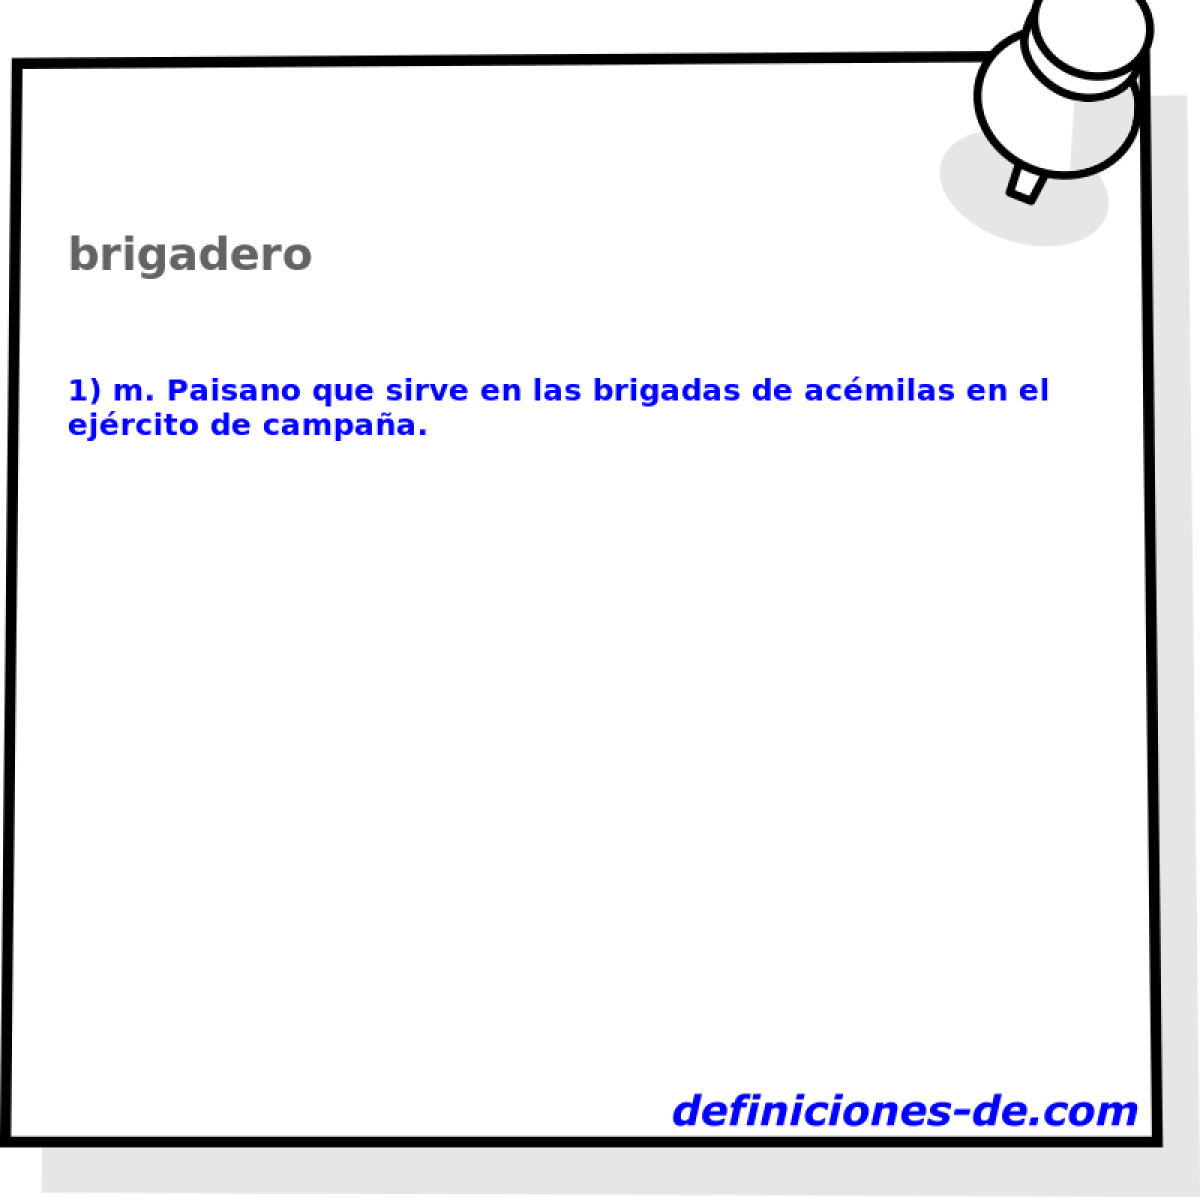 brigadero 